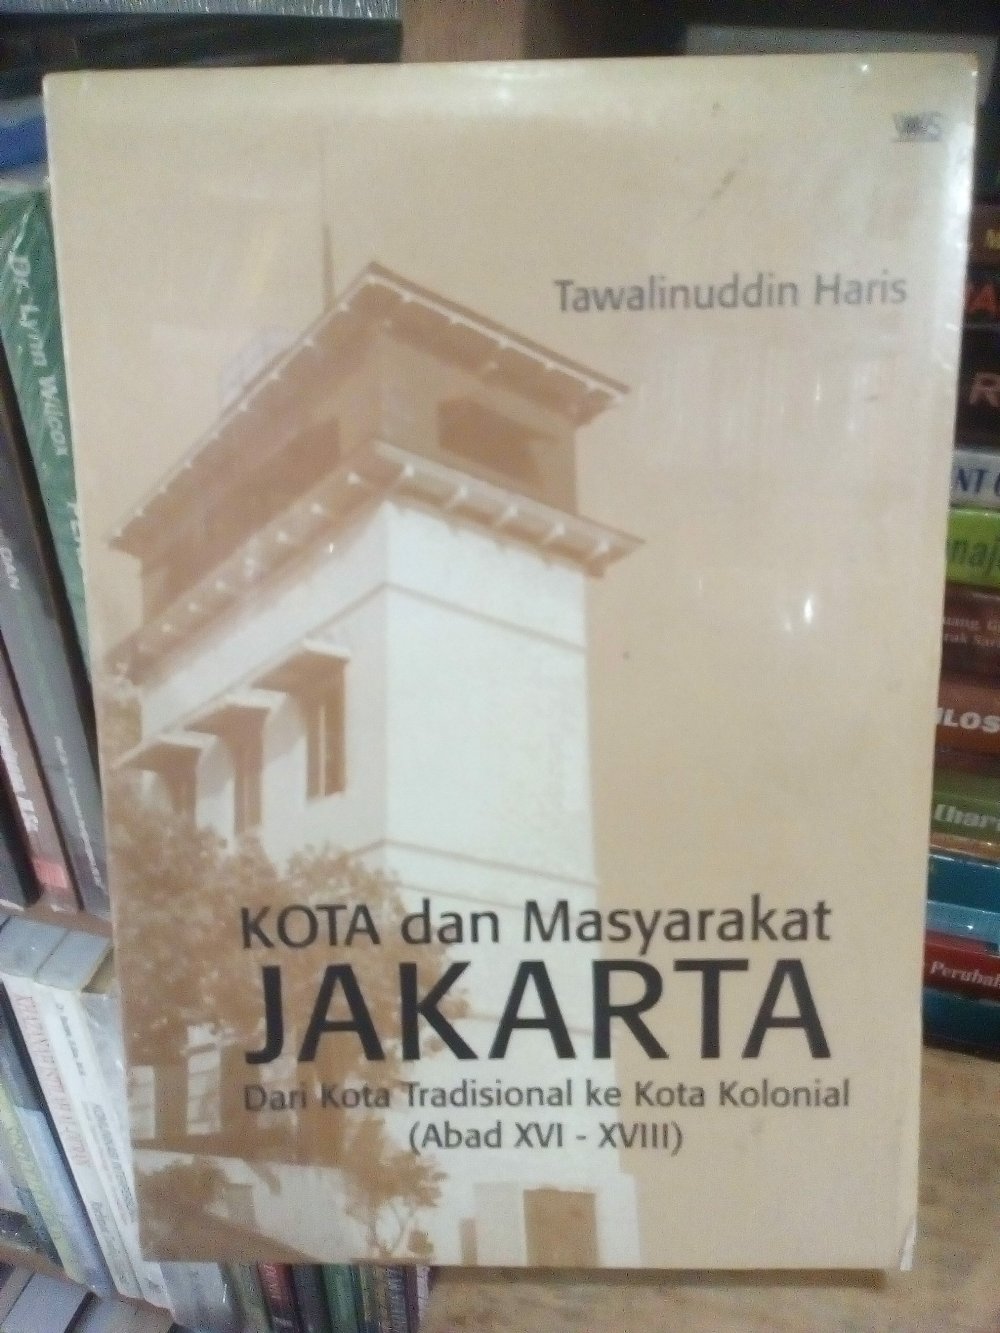 Kota dan masyarakat Jakarta :  Dari kota tradisional ke kota kolonial (Abad XVI - XVIII)